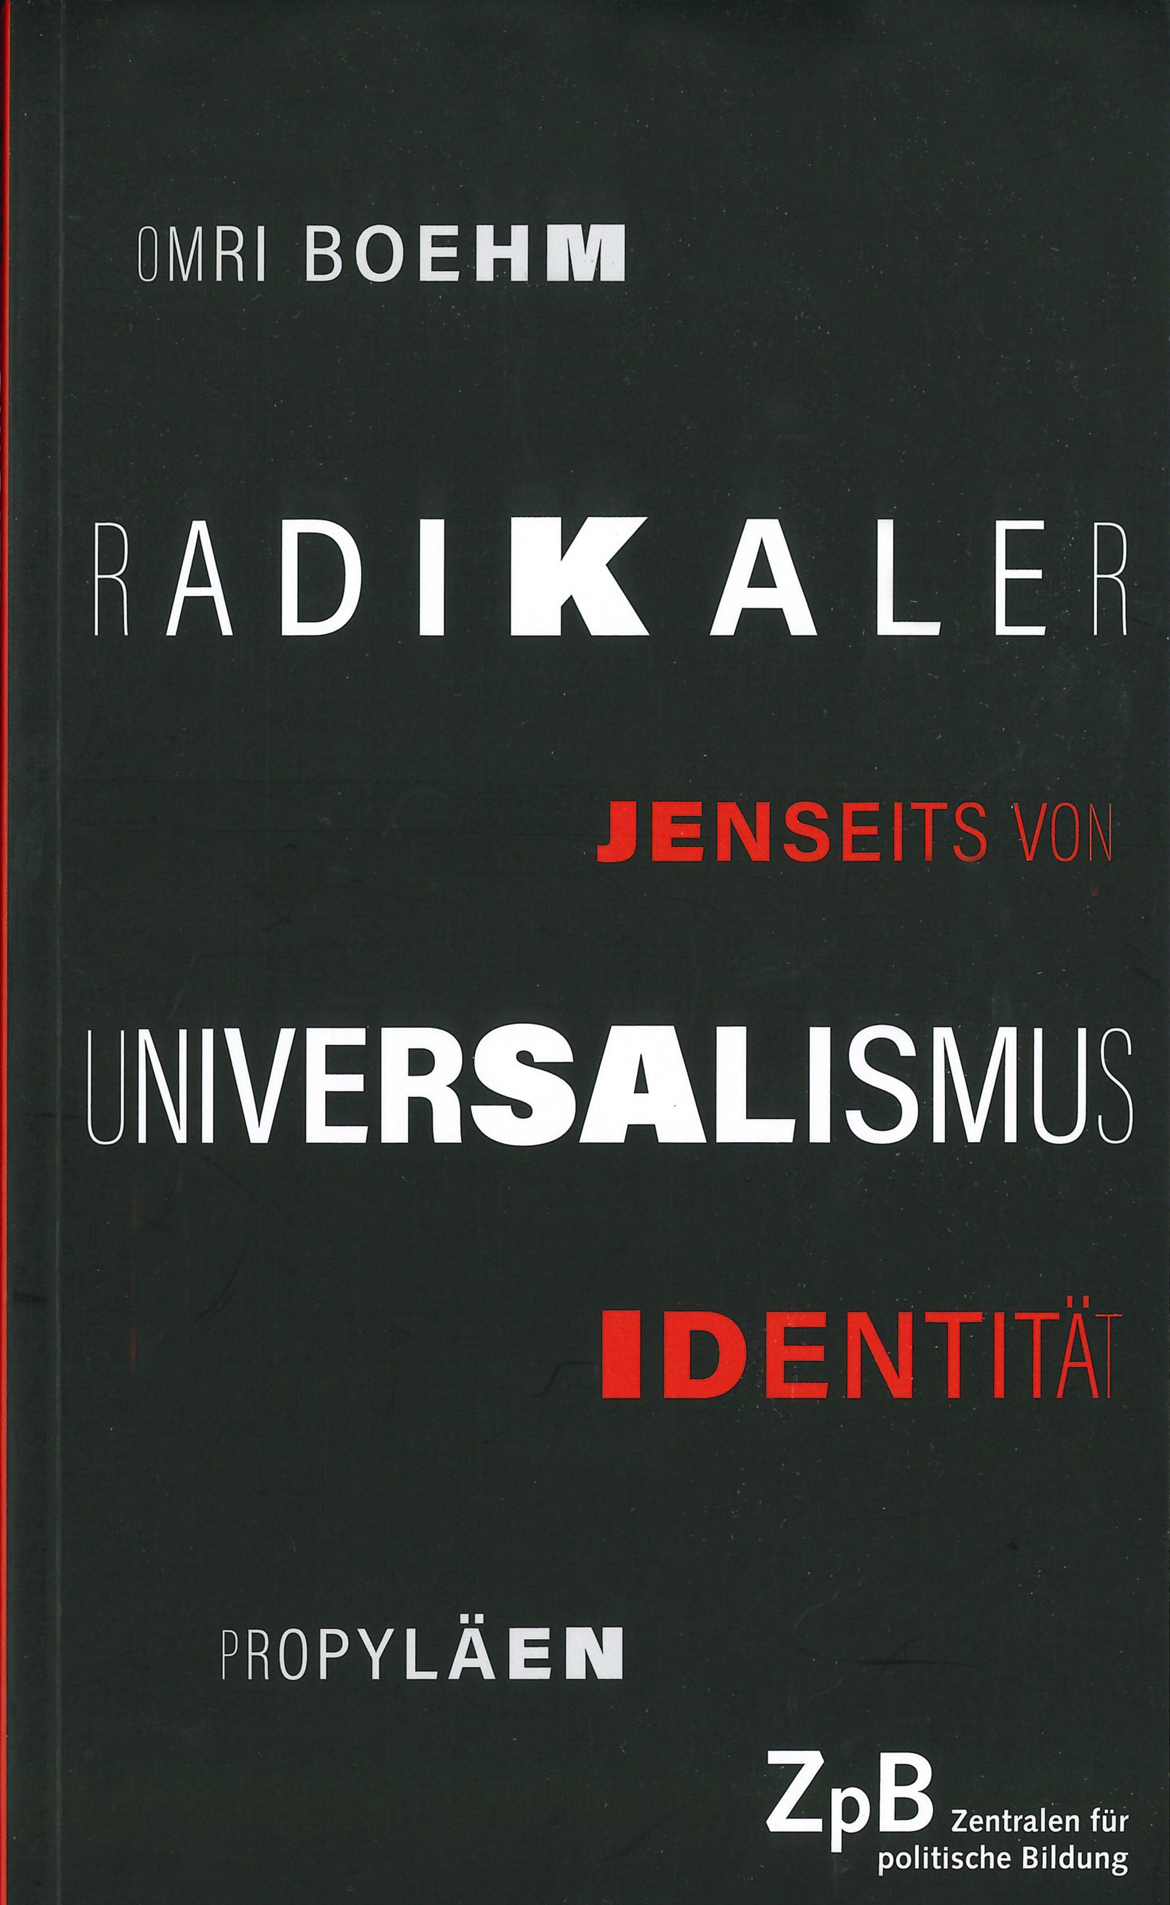 Buchcover: Radikaler Universalismus jenseits von Identität